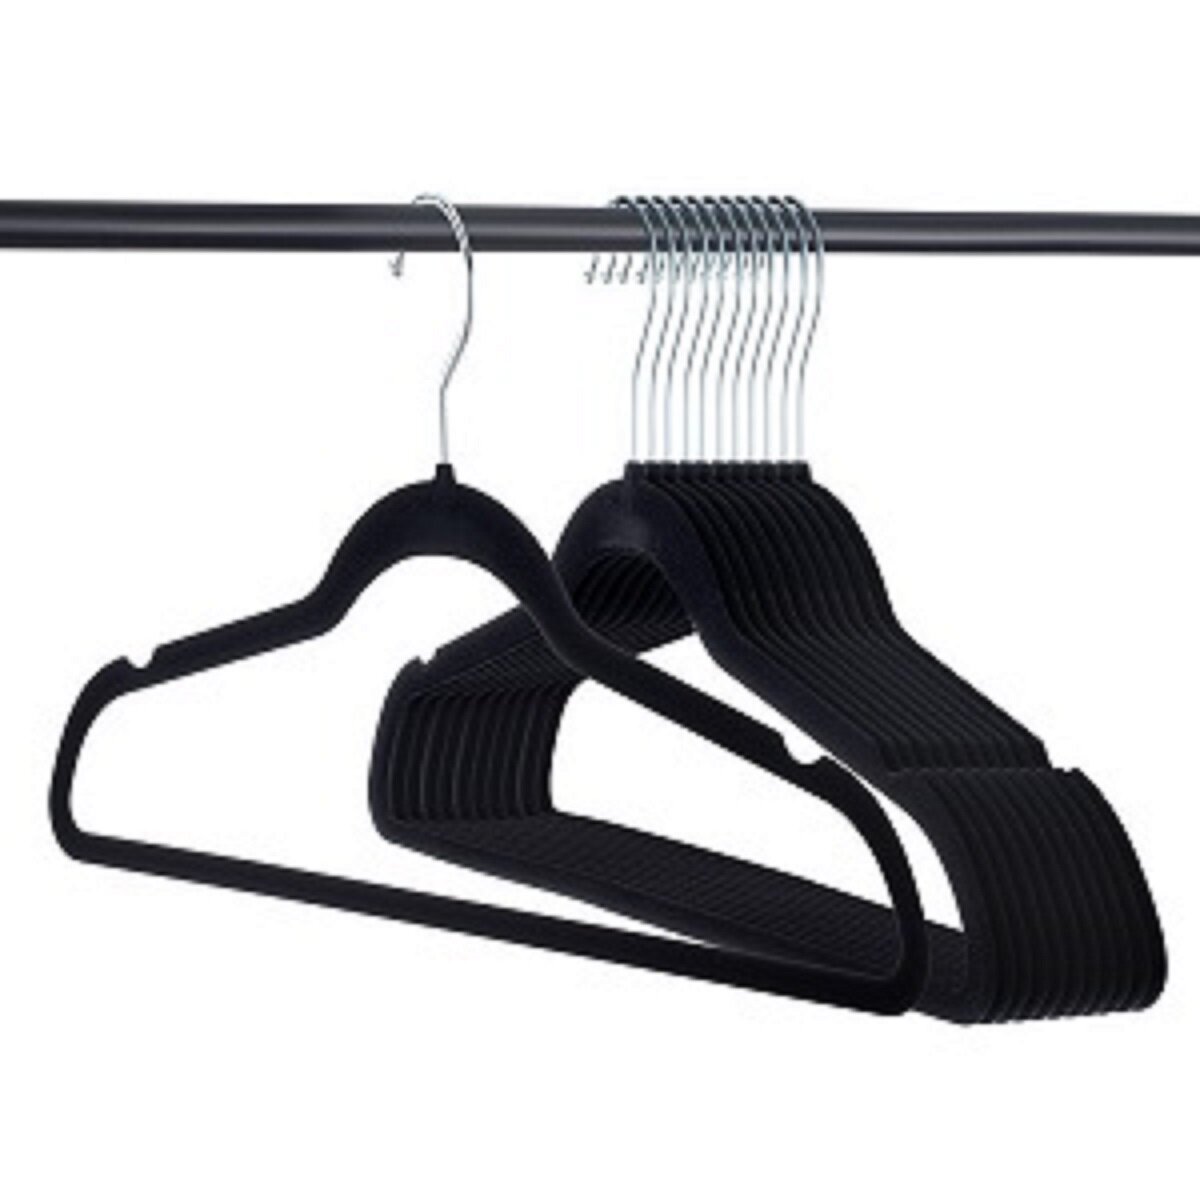 https://assets.wfcdn.com/im/93128506/compr-r85/1255/125593577/mcqueary-velvet-non-slip-standard-hanger-for-dressshirtsweater.jpg